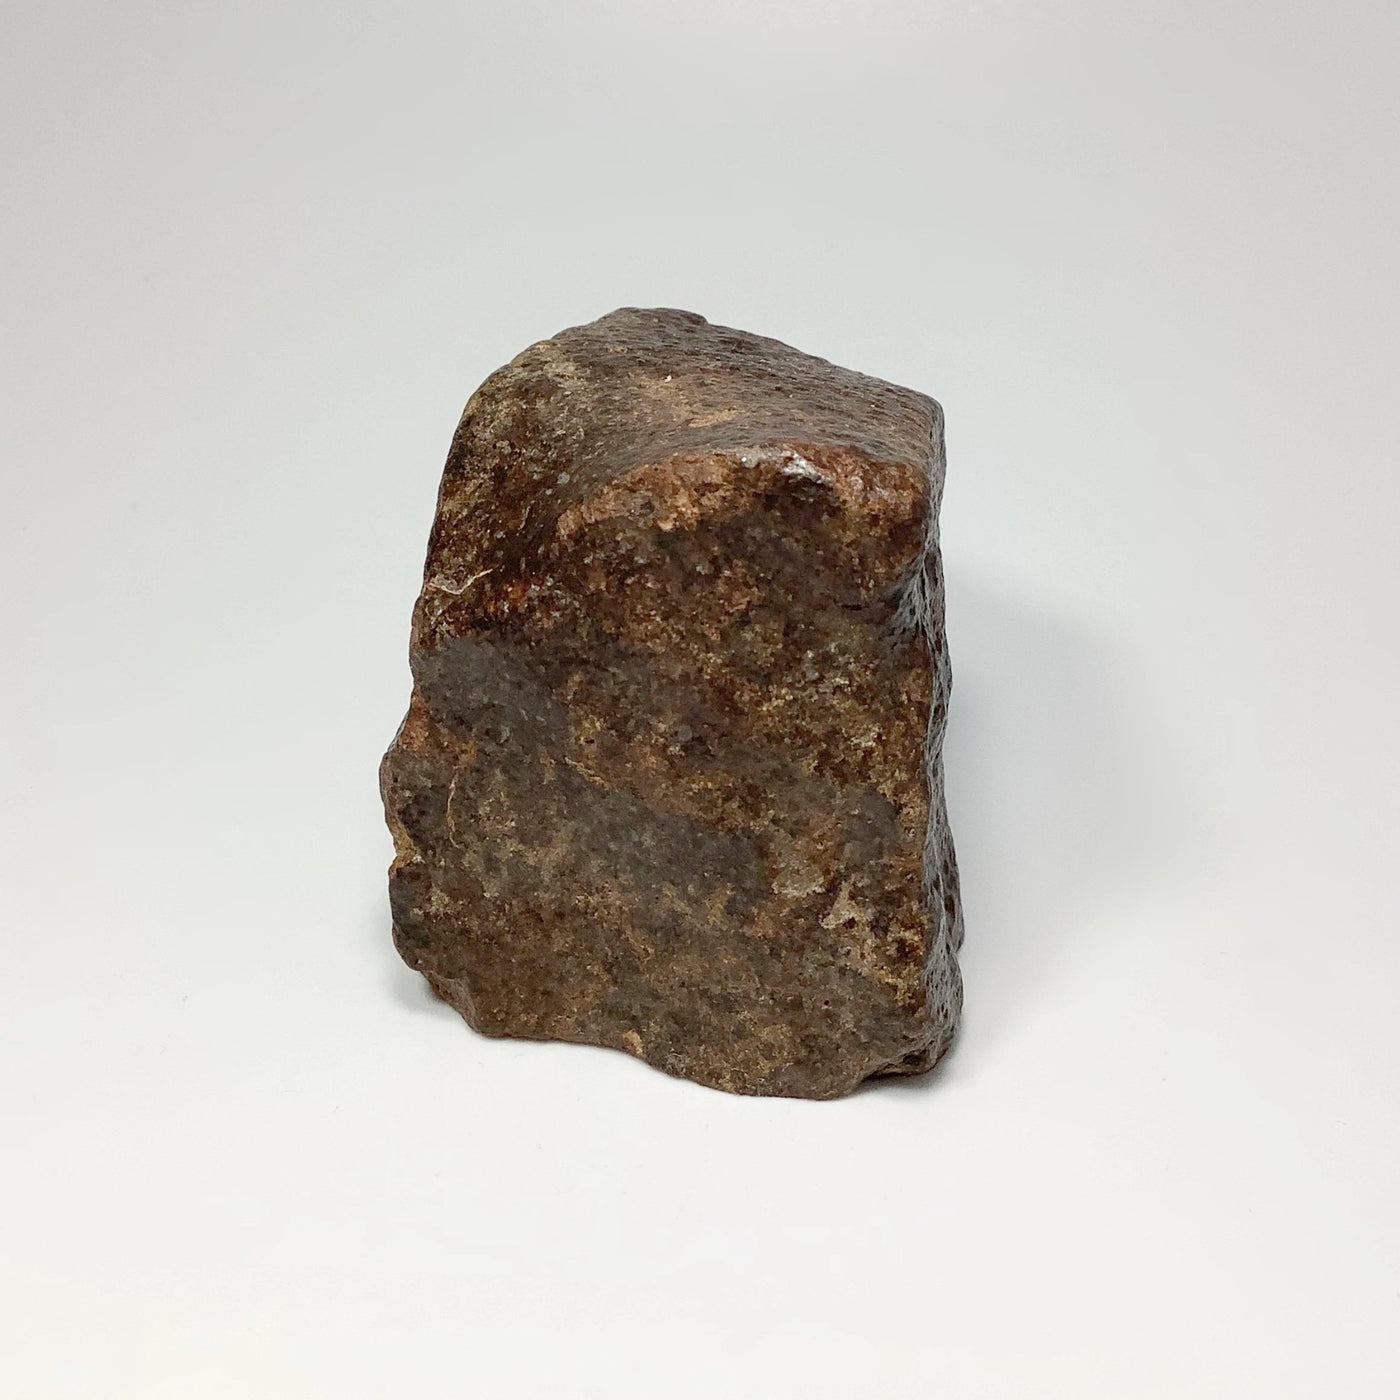 NWA Chondrite Meteorite